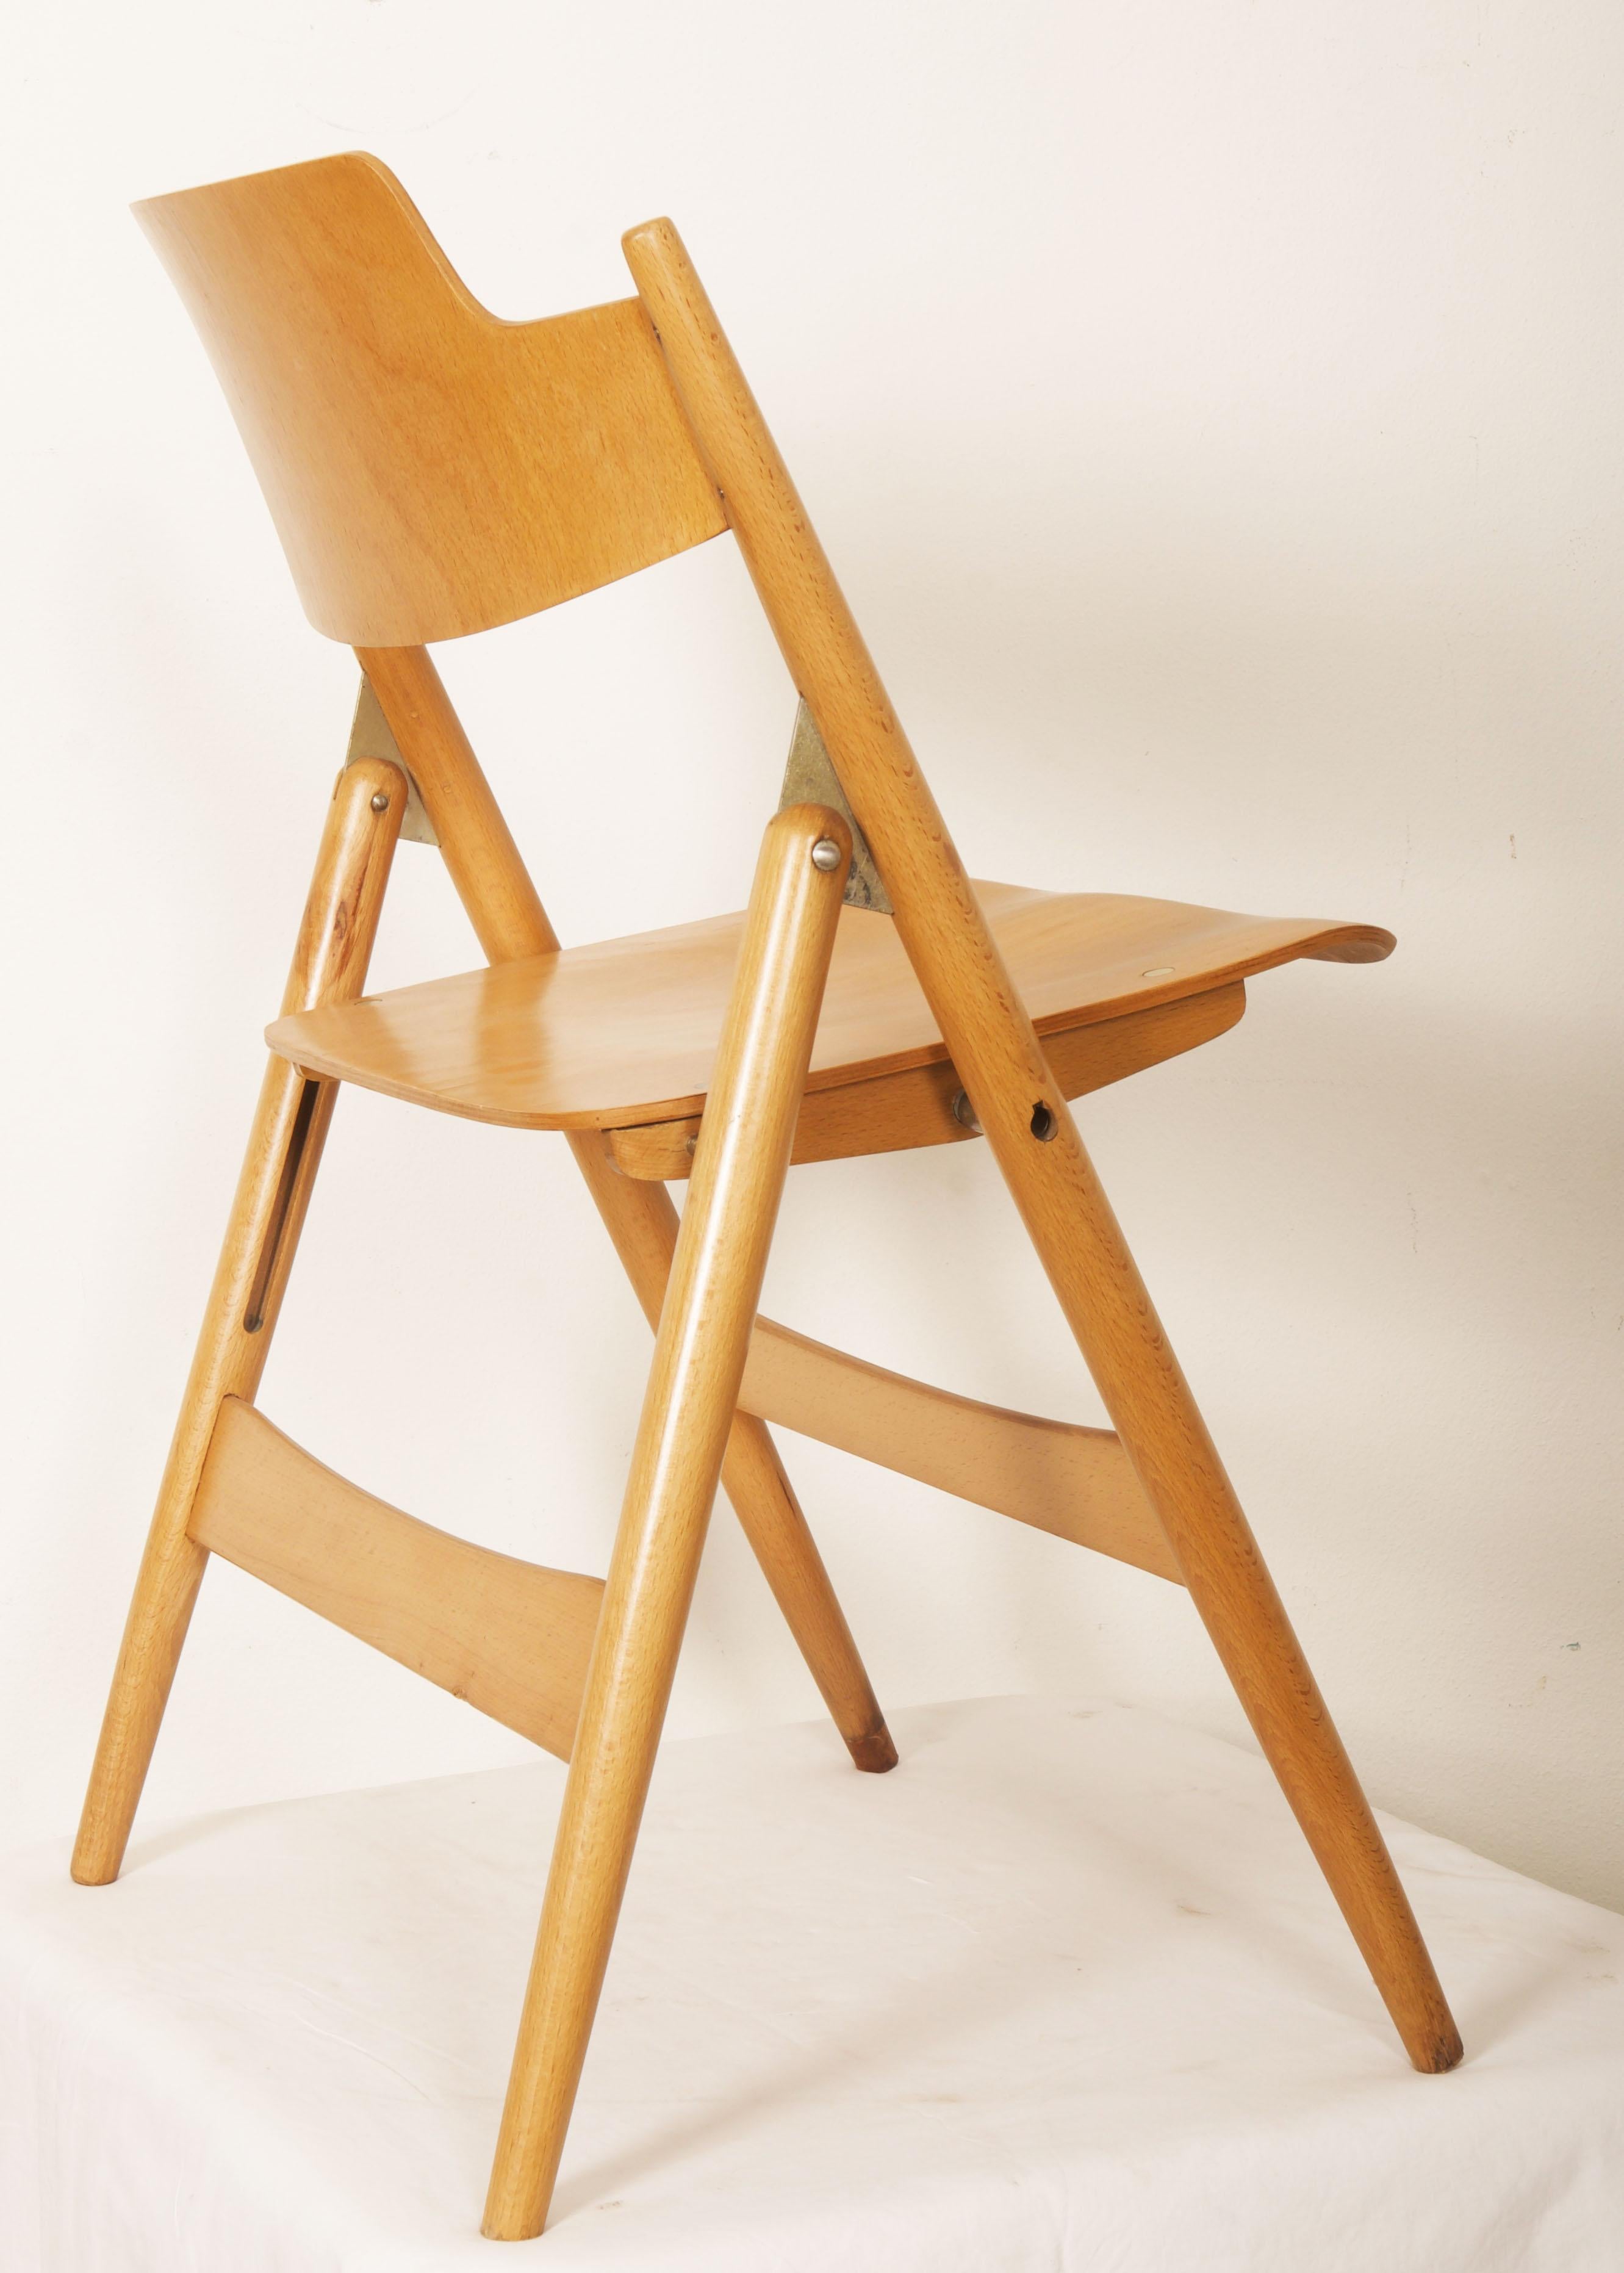 La chaise pliante modèle SE18 a été conçue en 1952 par Egon Eiermann pour Wilde & Spieth. La chaise est aujourd'hui exposée au Museum of Modern Art de New York dans sa collection permanente d'art moderne et elle a été présentée à l'exposition